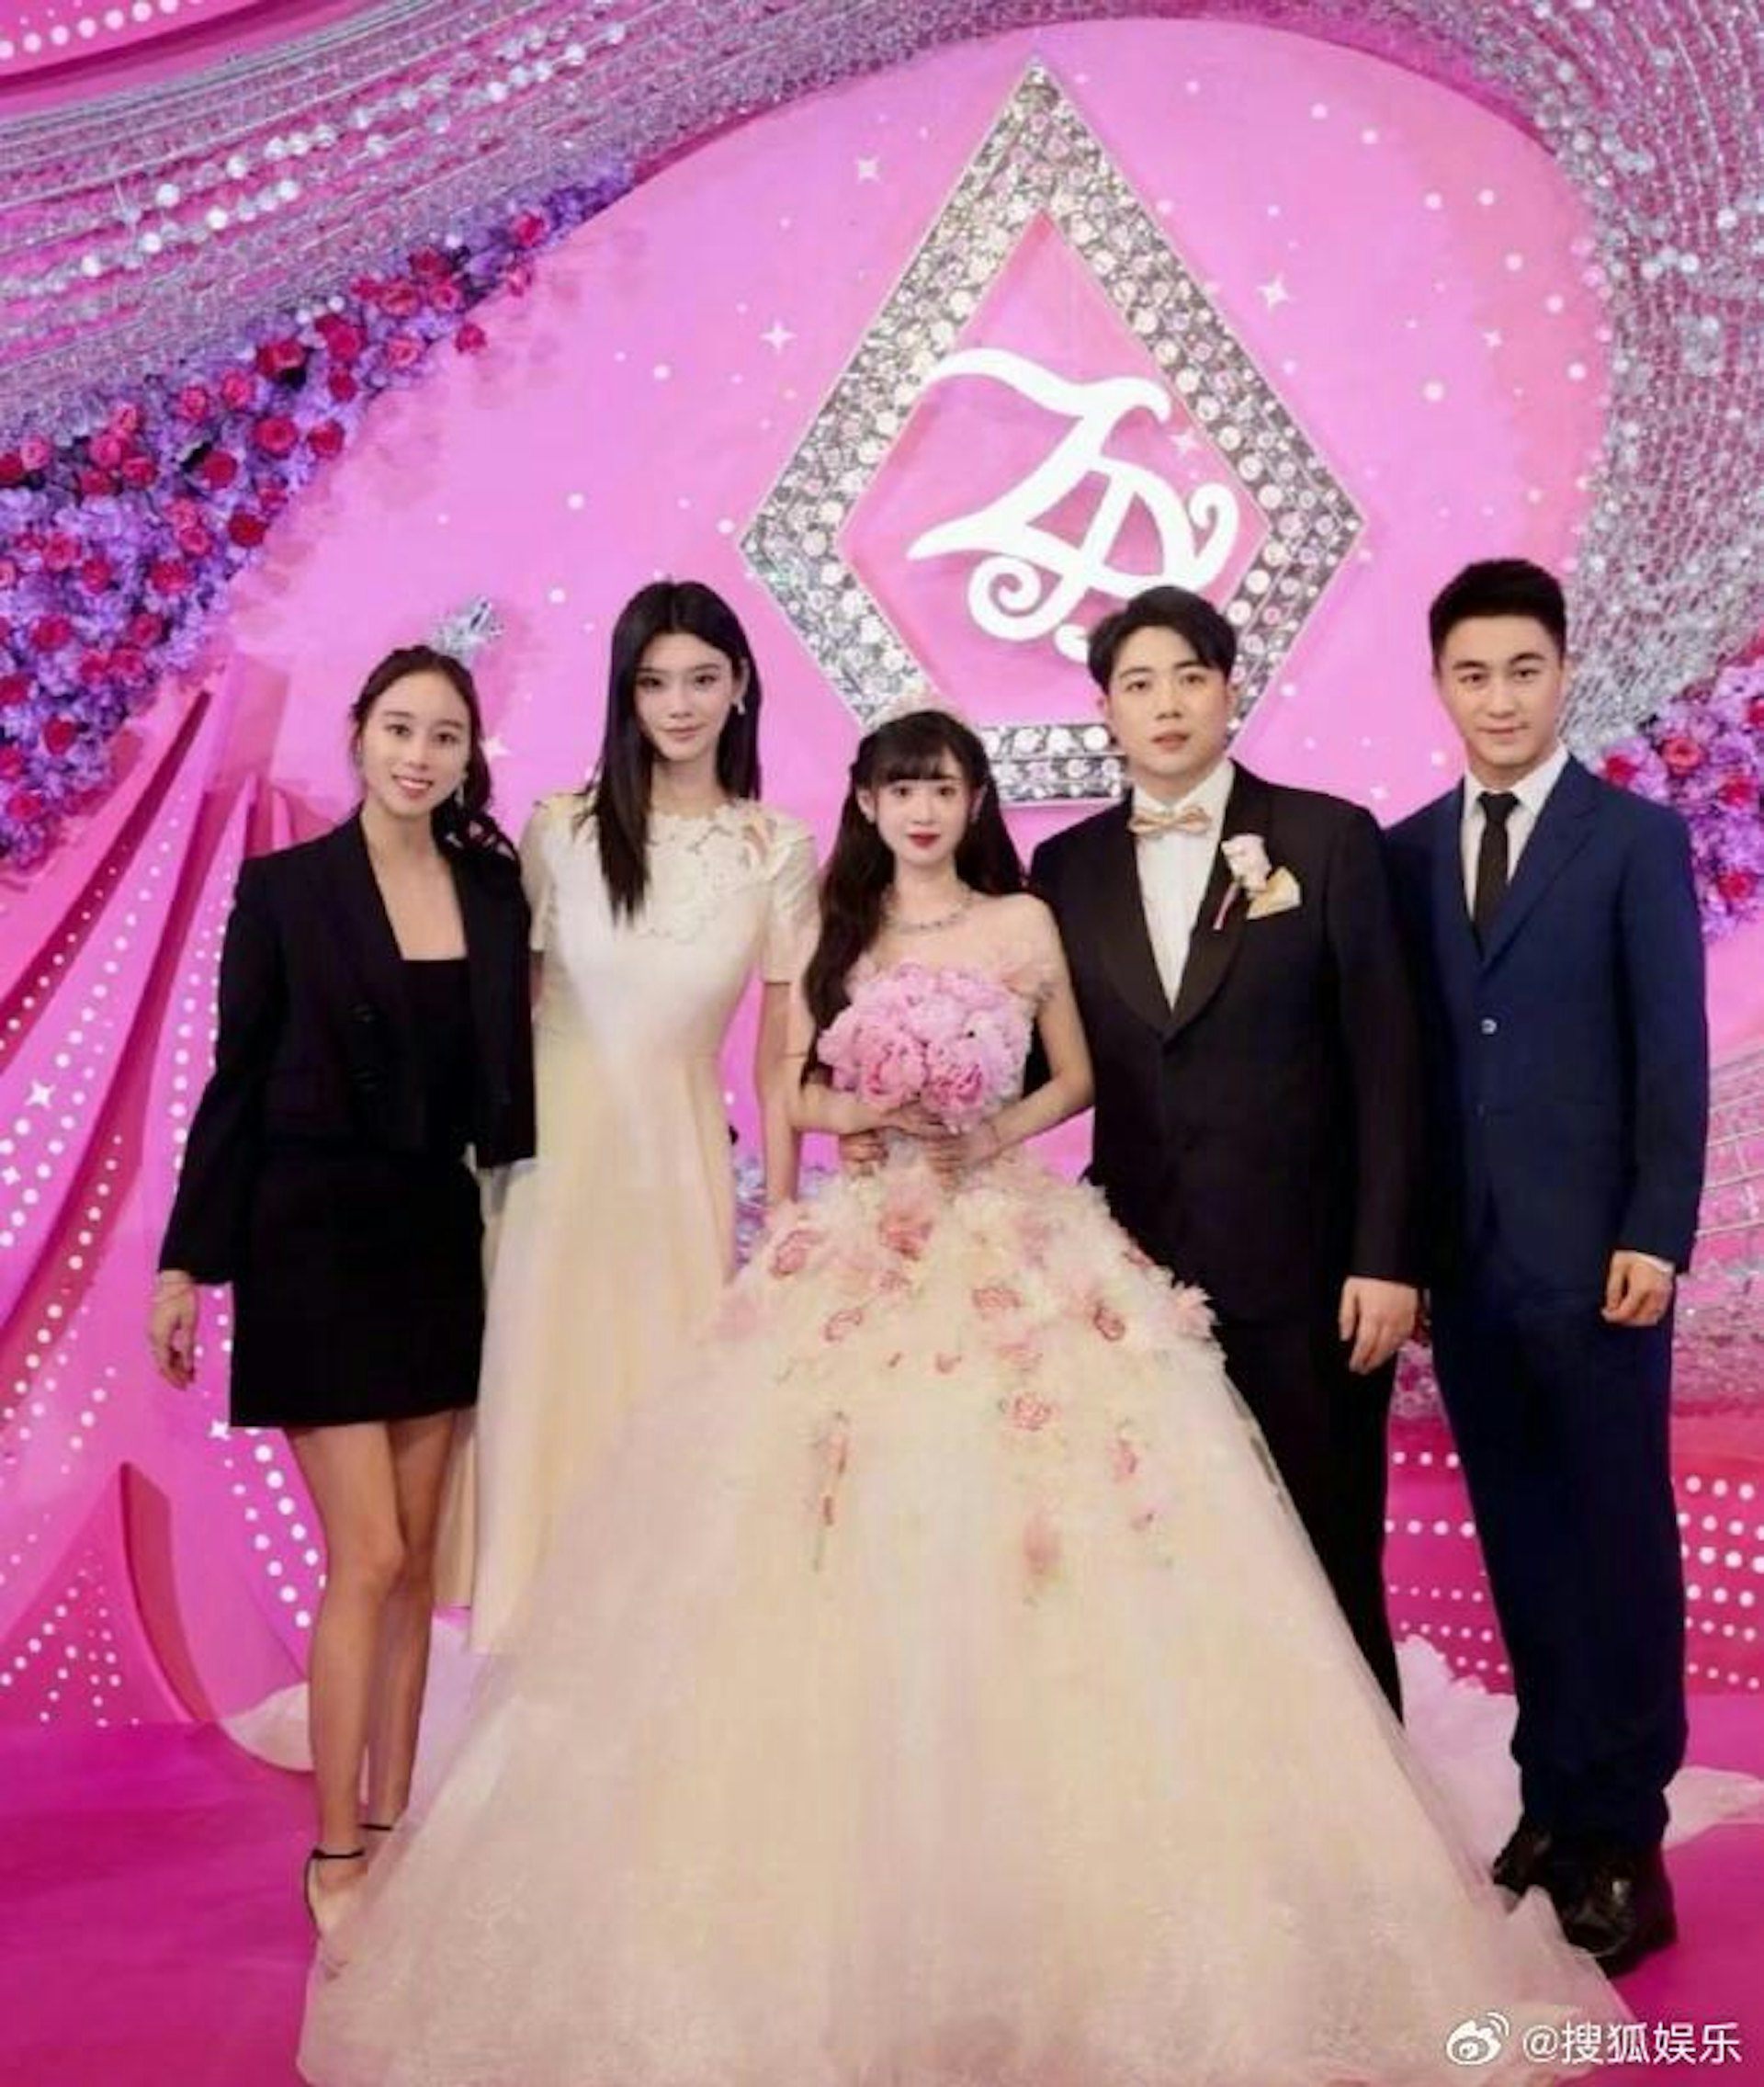 Lộ ảnh hôn lễ của 2 rich kid Trung Quốc khiến dân mạng xôn xao - 3